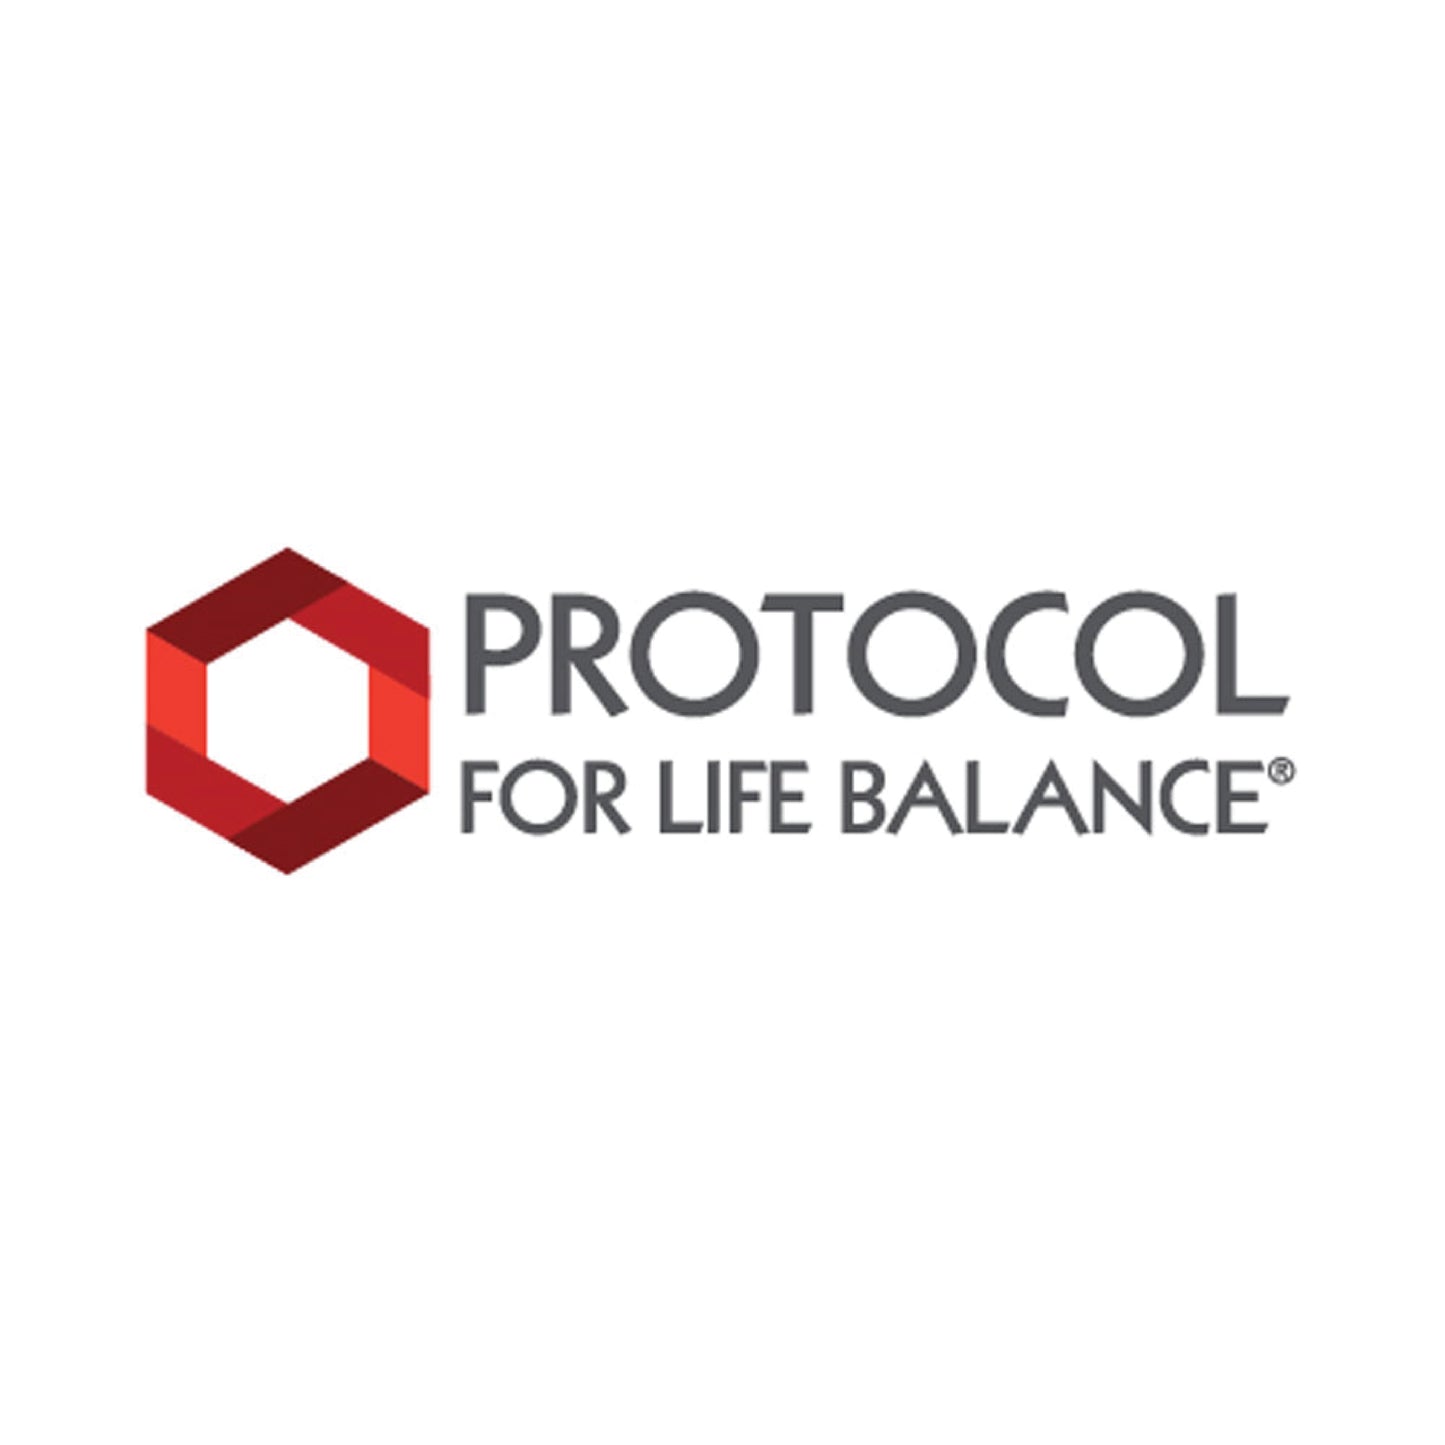 Protocol for Life Balance, Iron, High Potency, 36 mg, 90 Veg Capsules